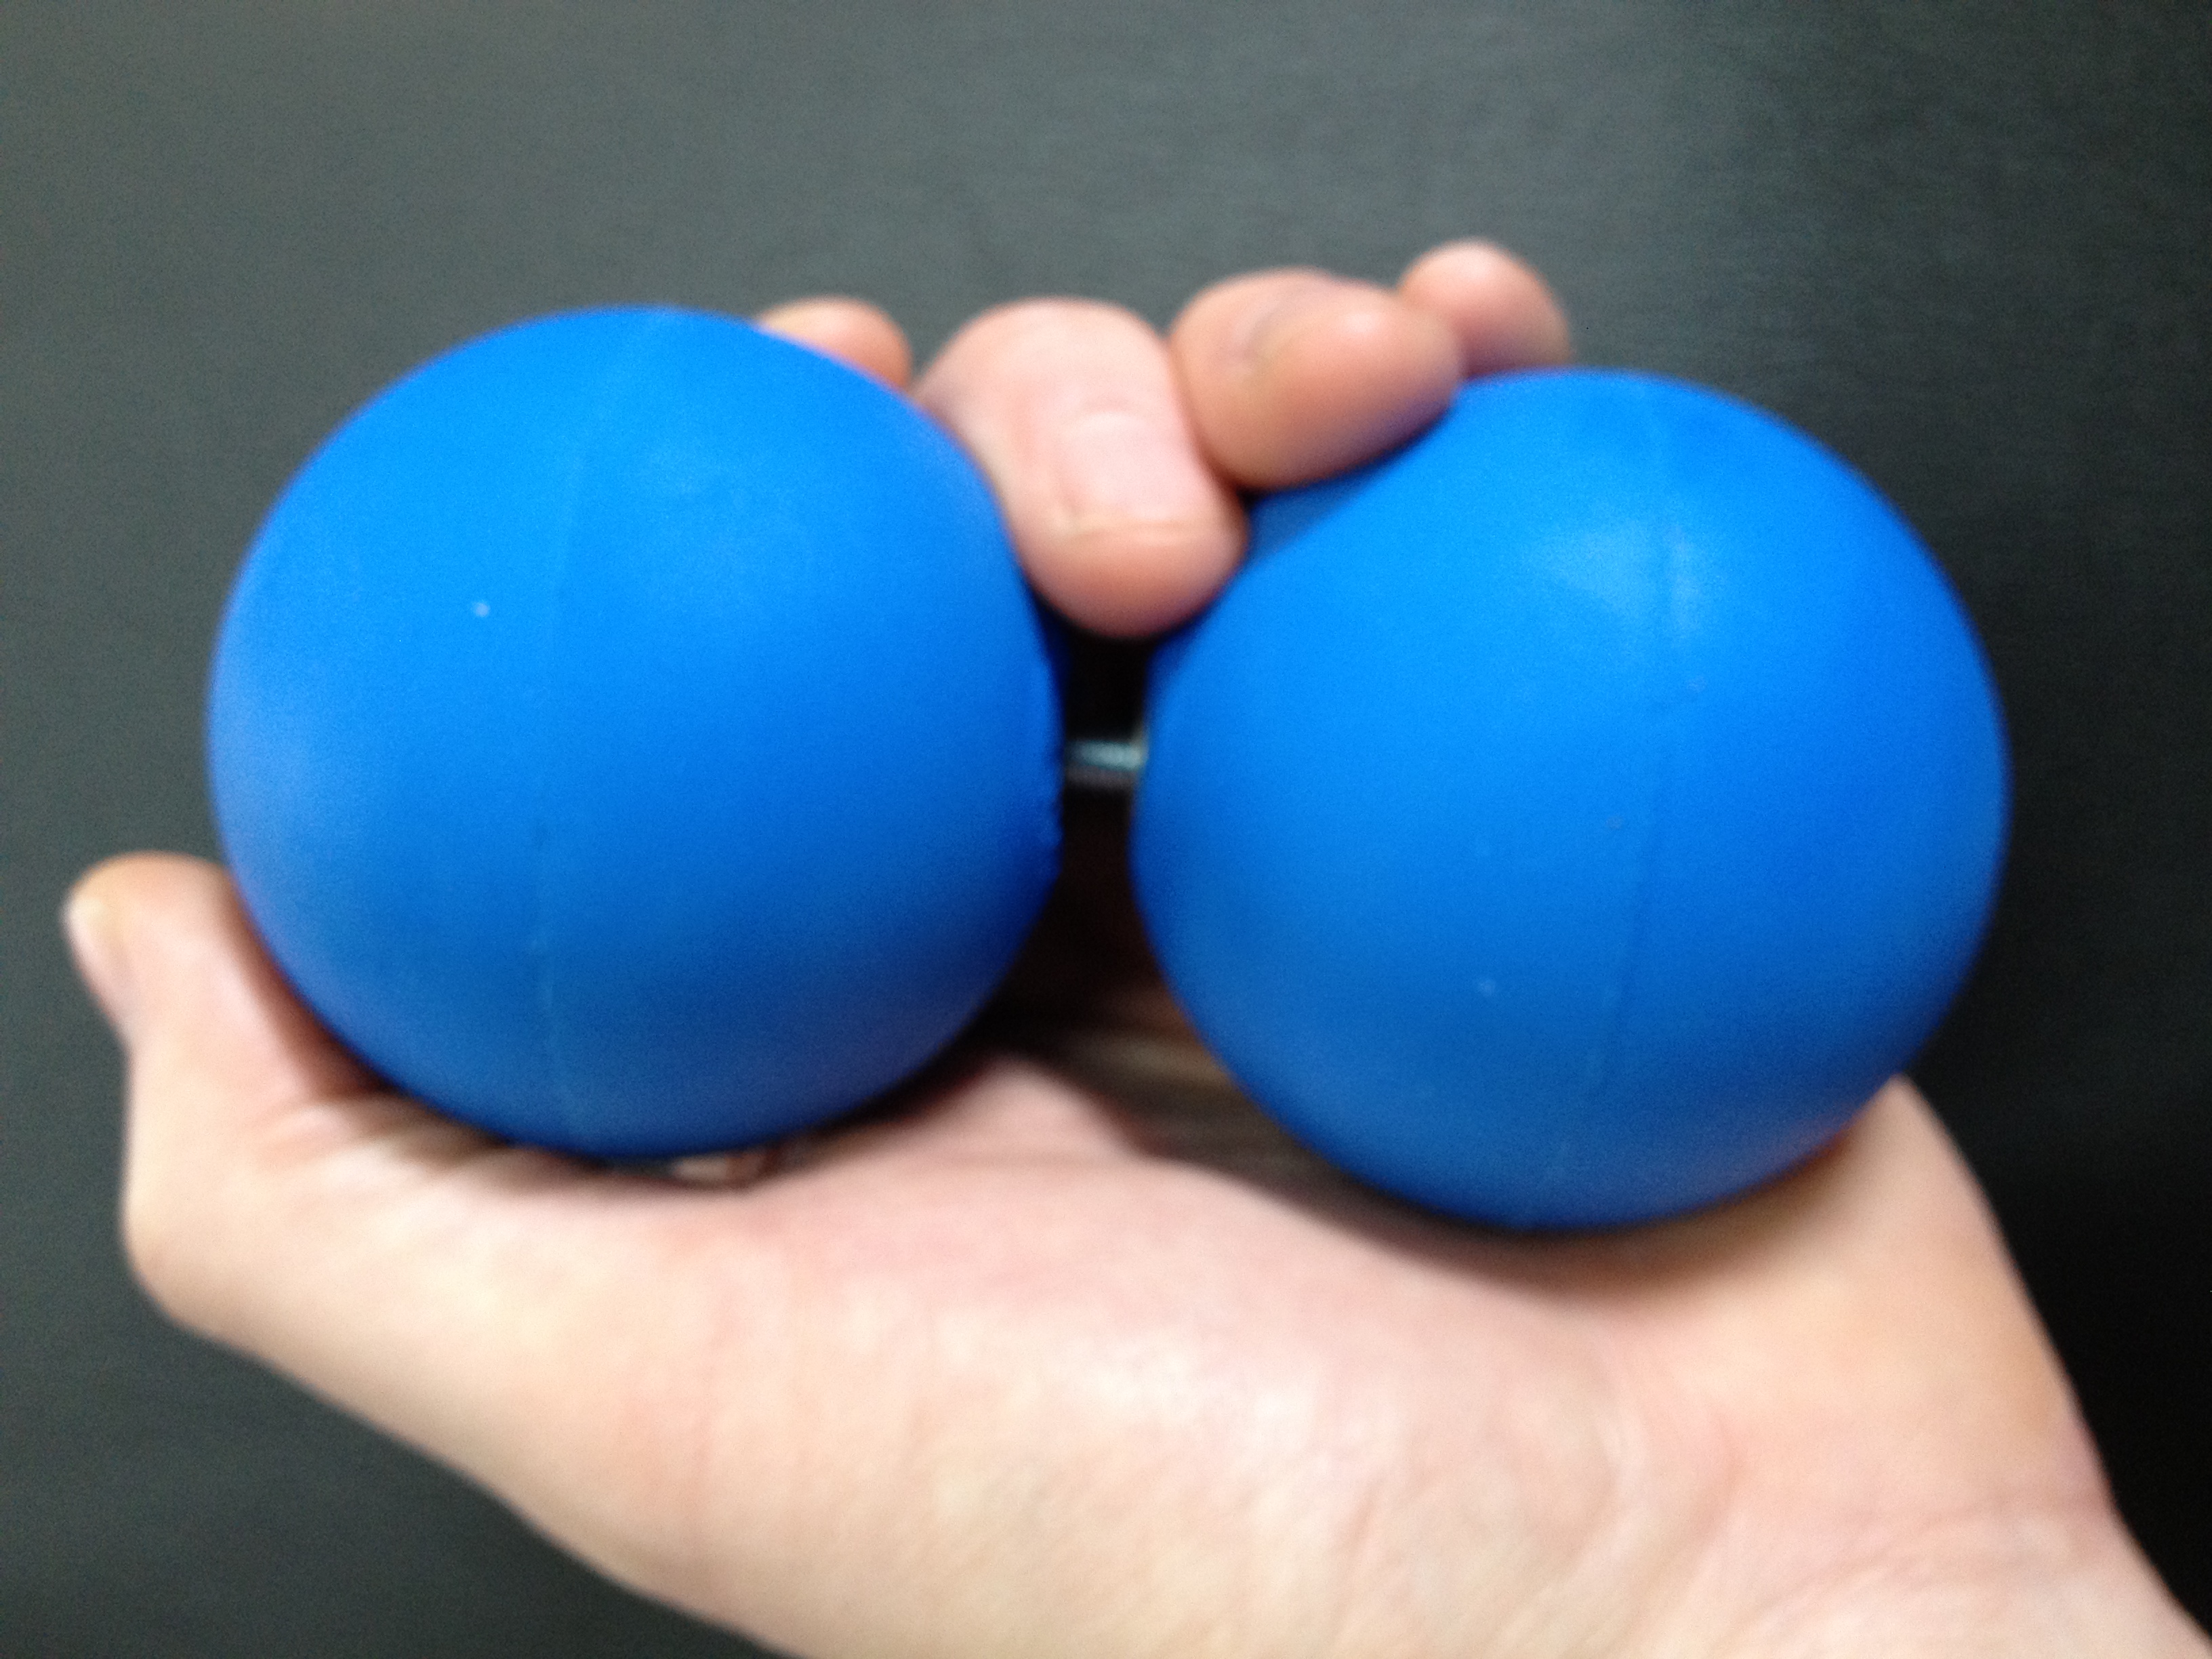 Apr 28, 2016. blue balls. 